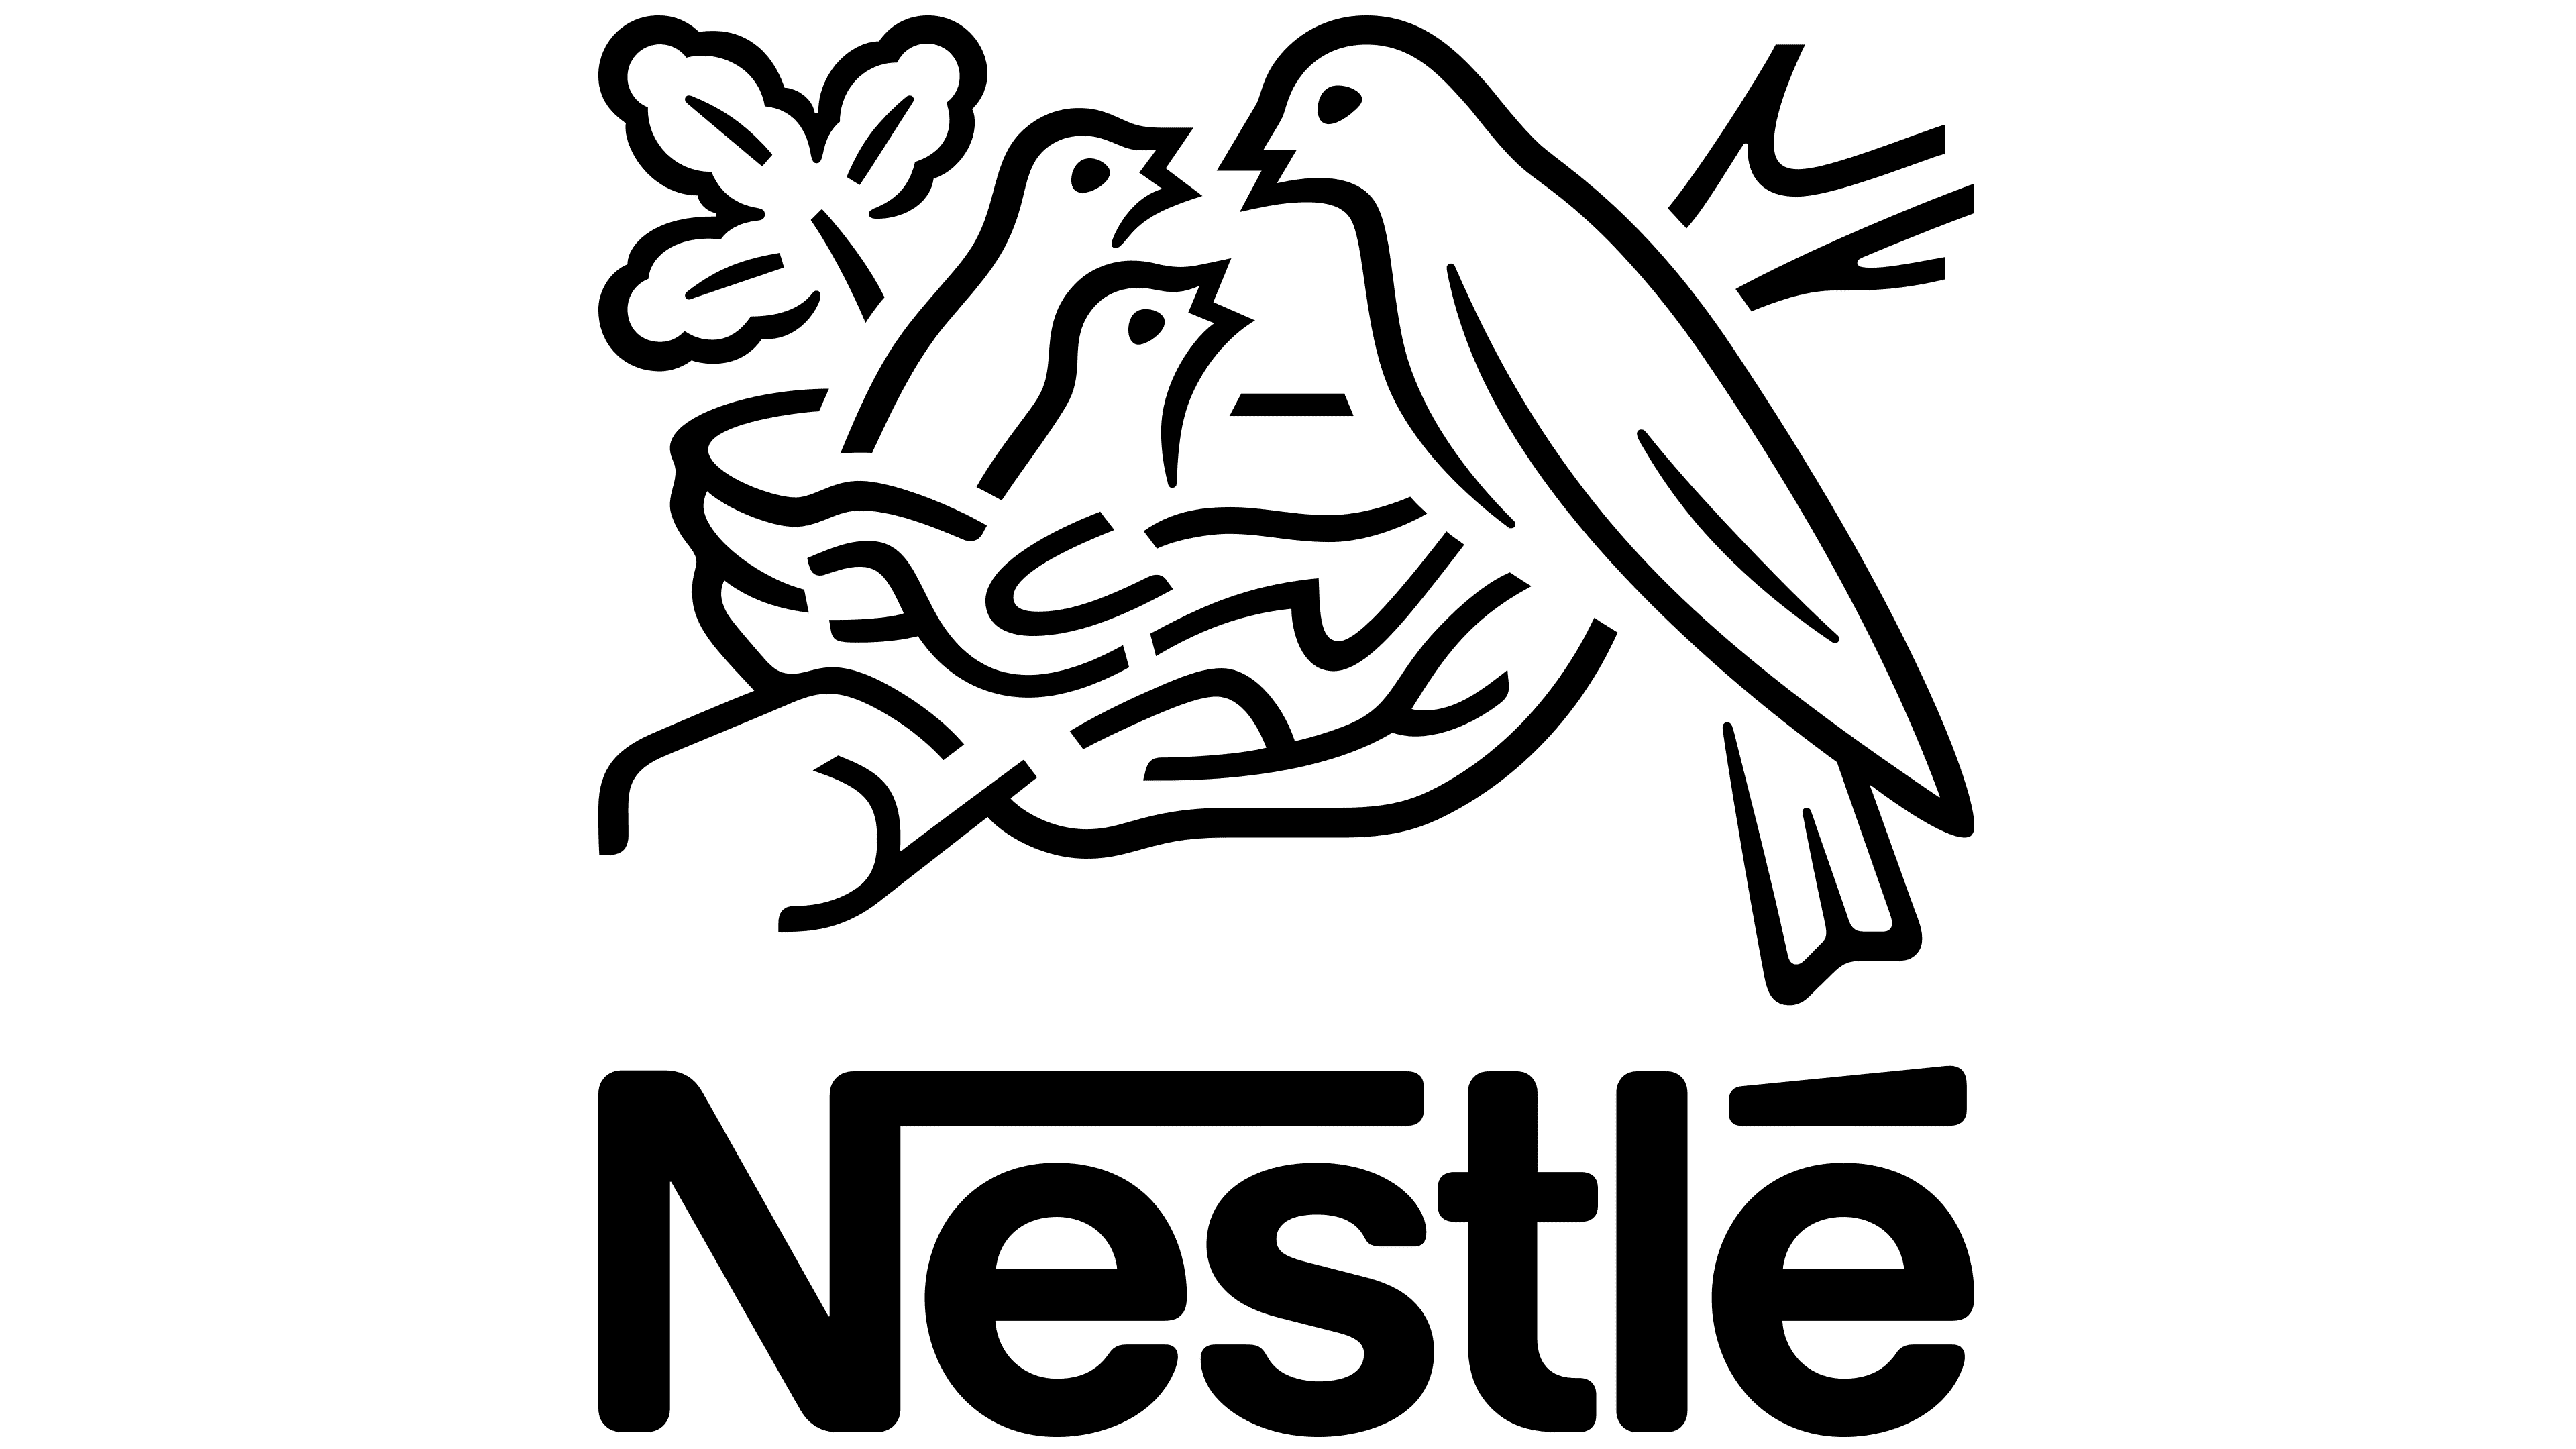 Nestle NanCare DHA Vit D&E drops 8ml